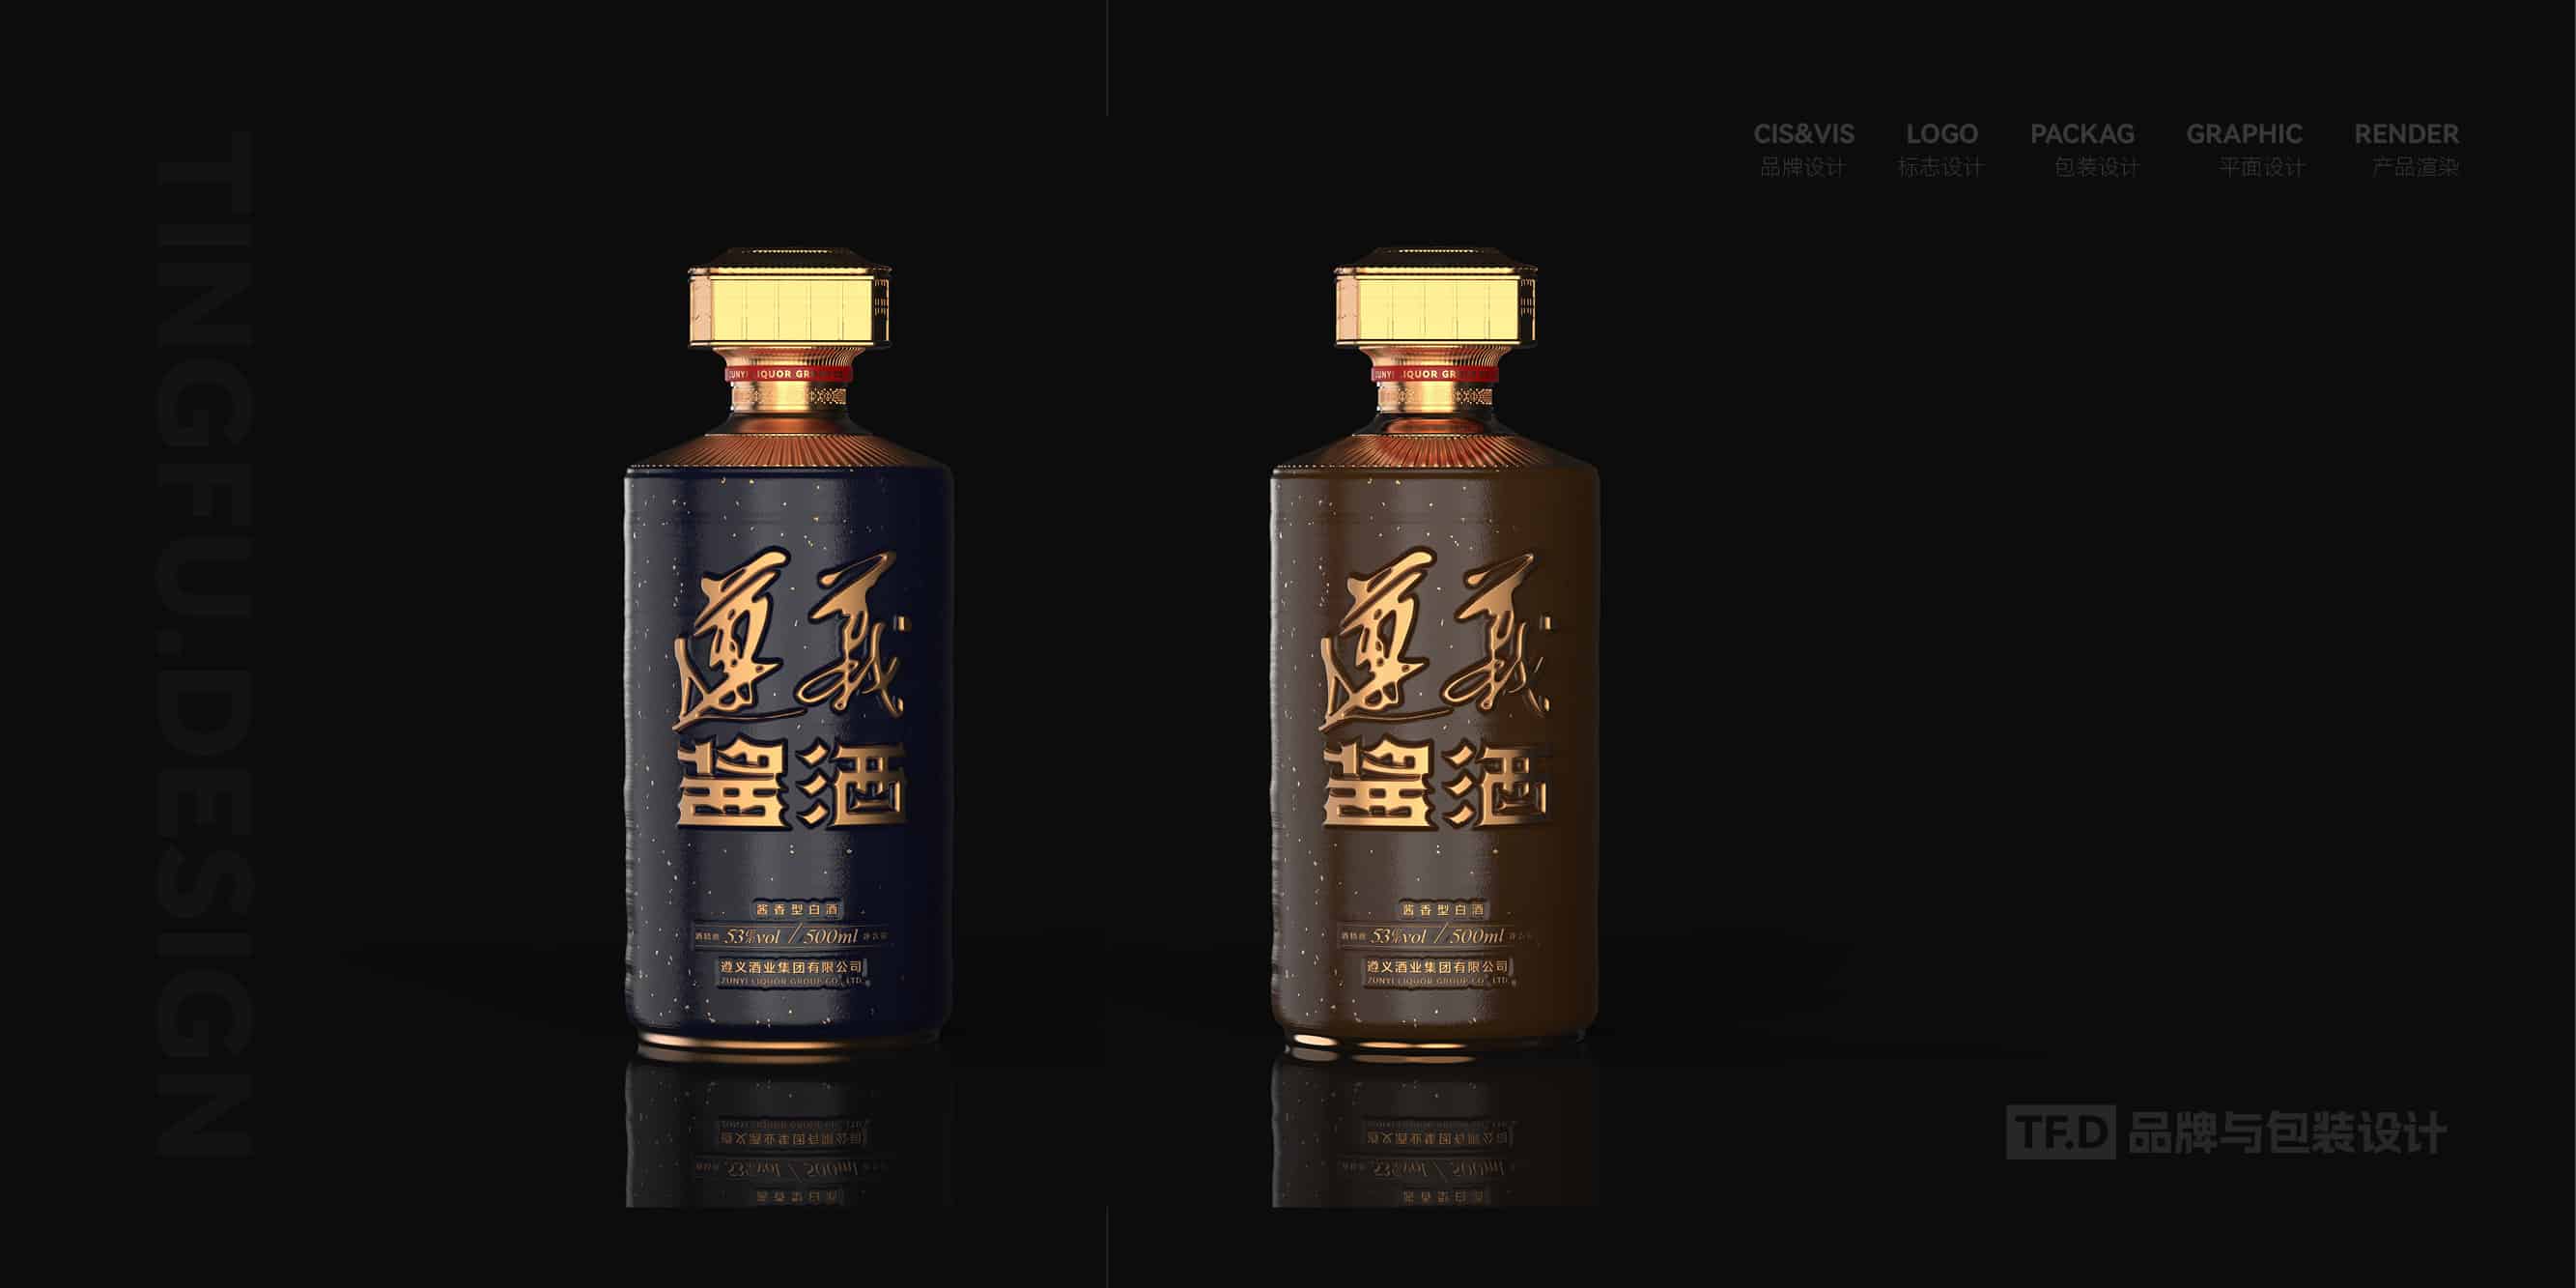 TFD品牌与包装设计-部分酒包装设计案例60-tuya.jpg